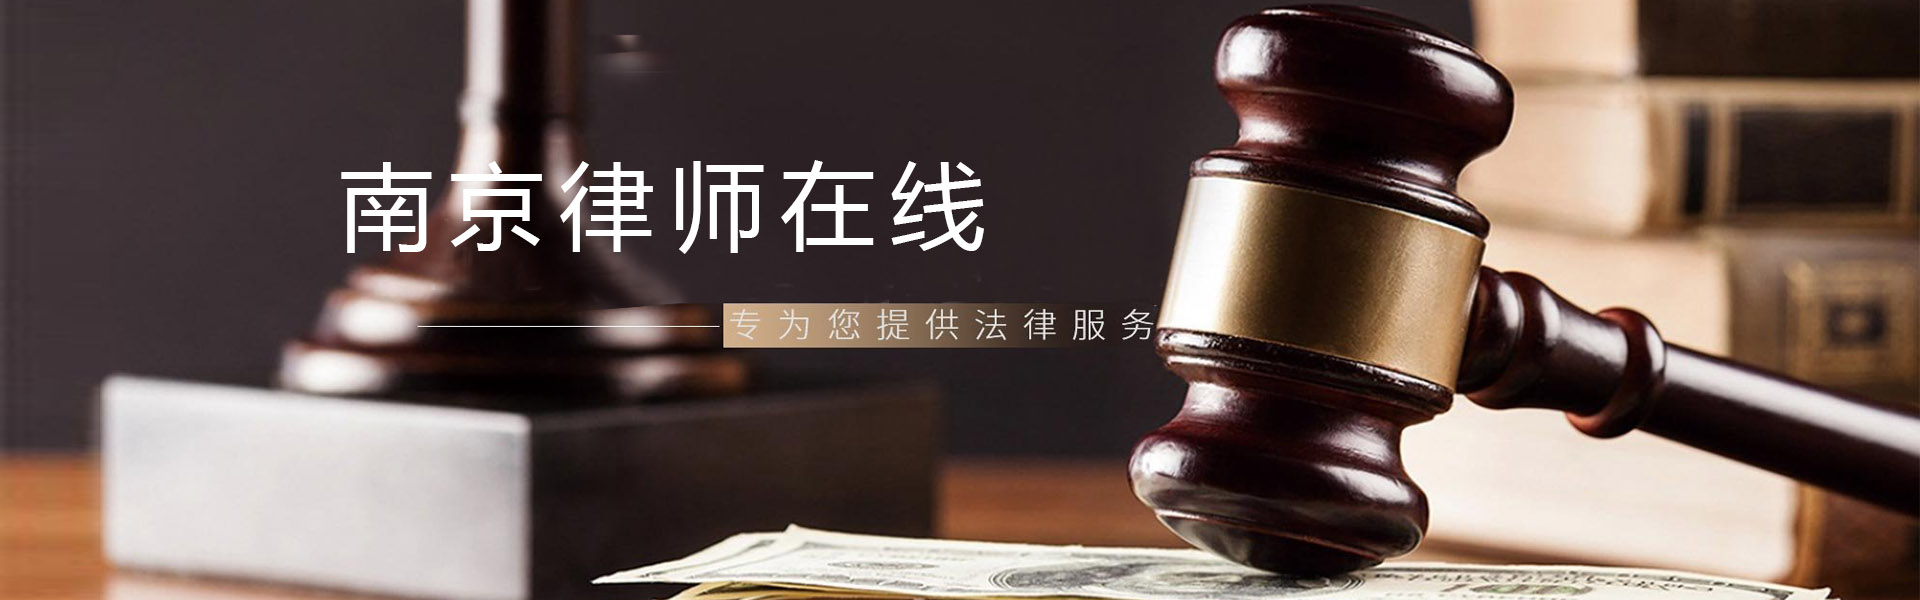 南京万博max官网地址-免费法律咨询服务